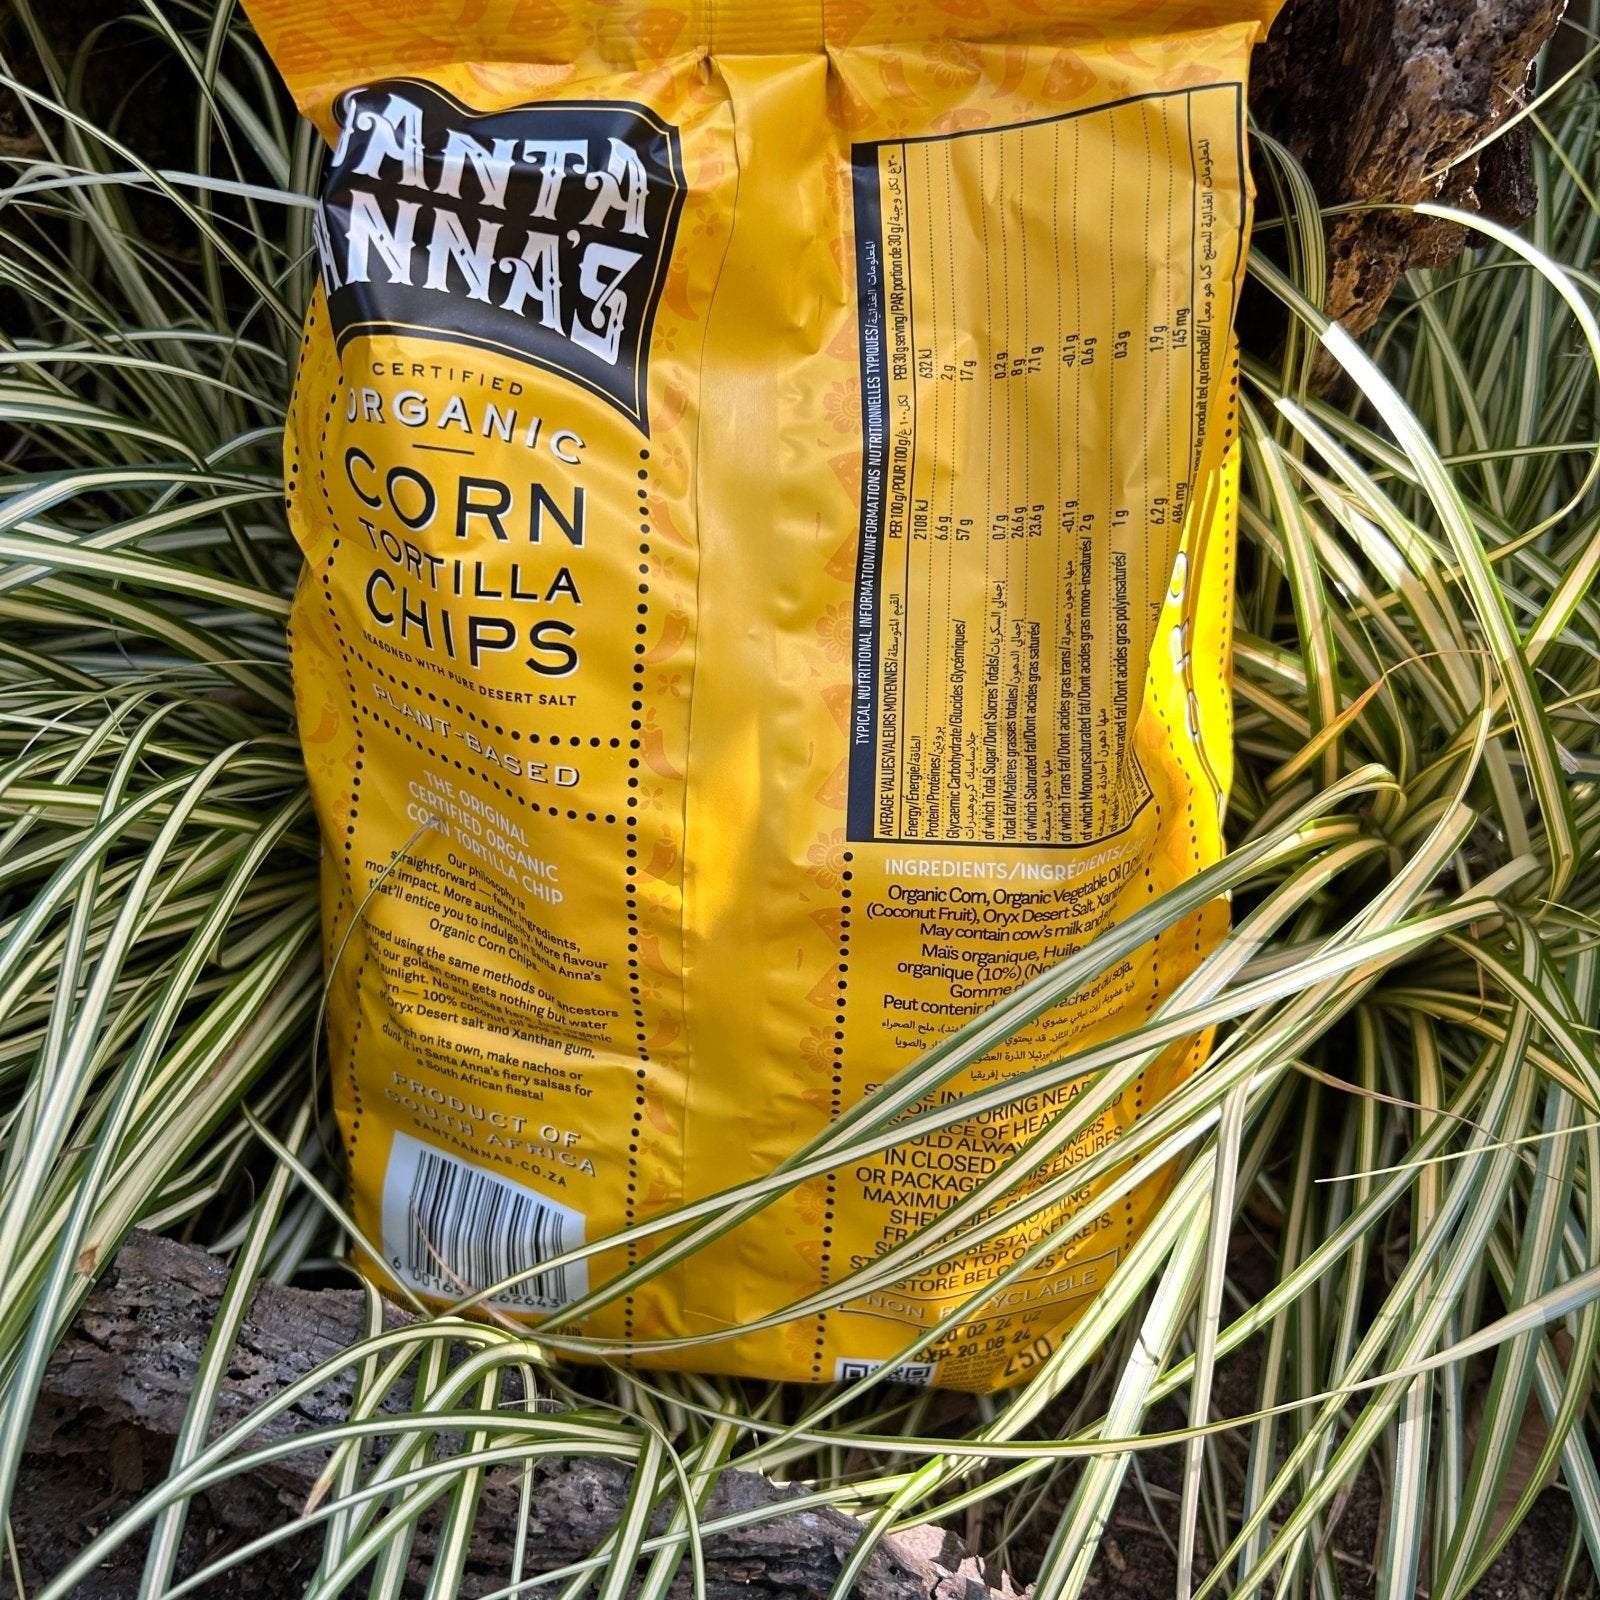 Santa Anna's Organic Corn Chips (250g) - The Deli